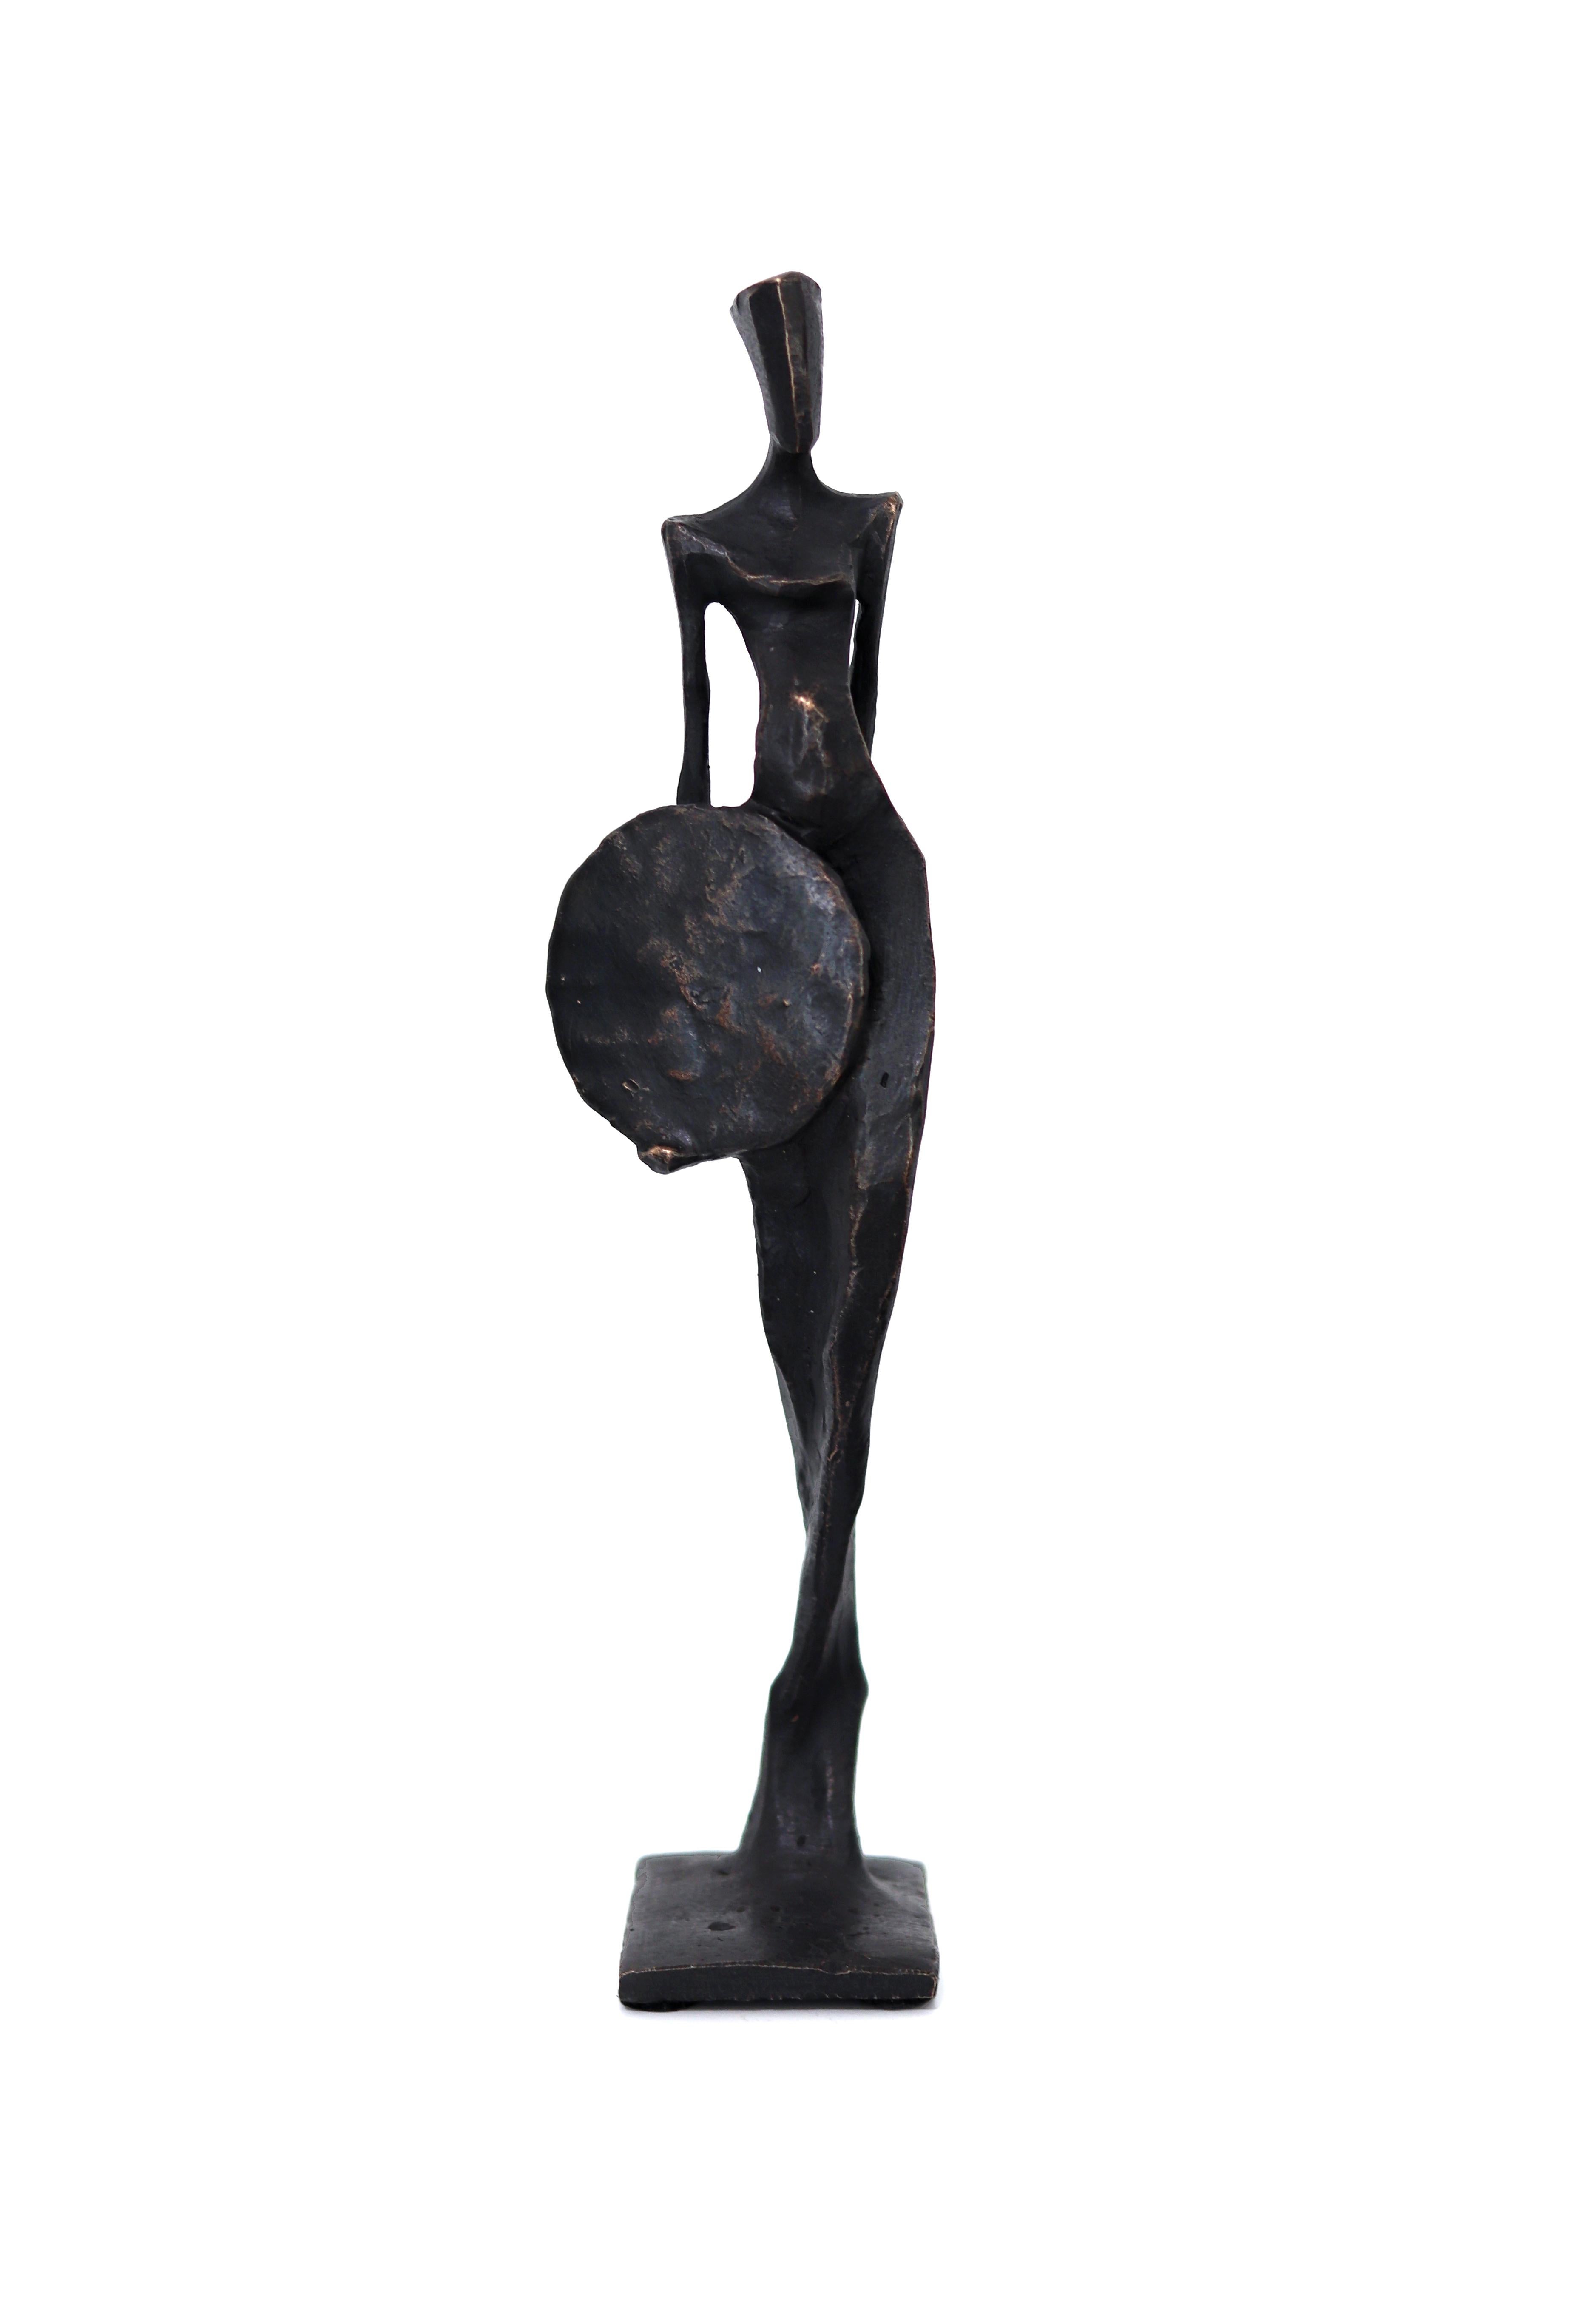 Hera  Anmutige moderne figurative Bronzeskulptur – Originalkunst und Design 